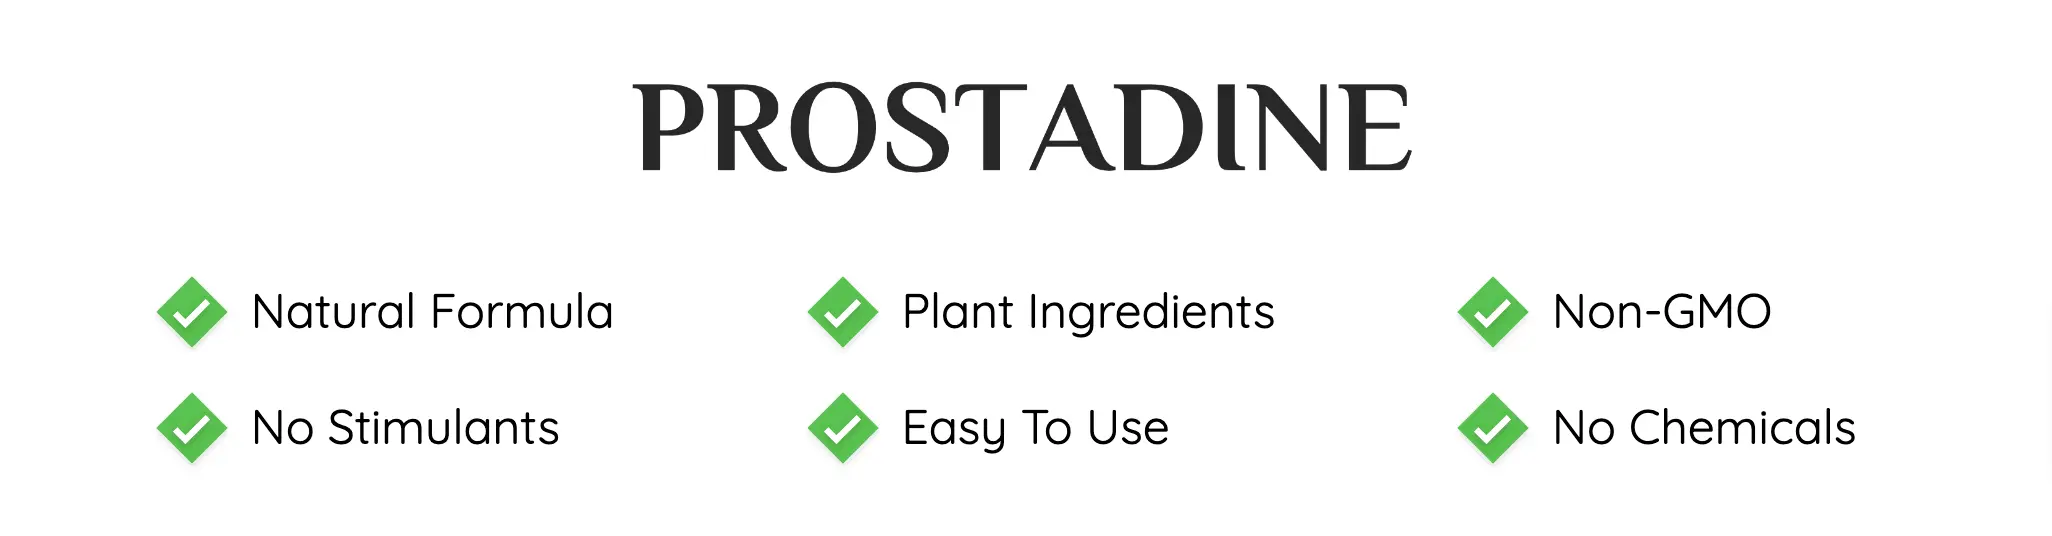 prostadine-ingredients